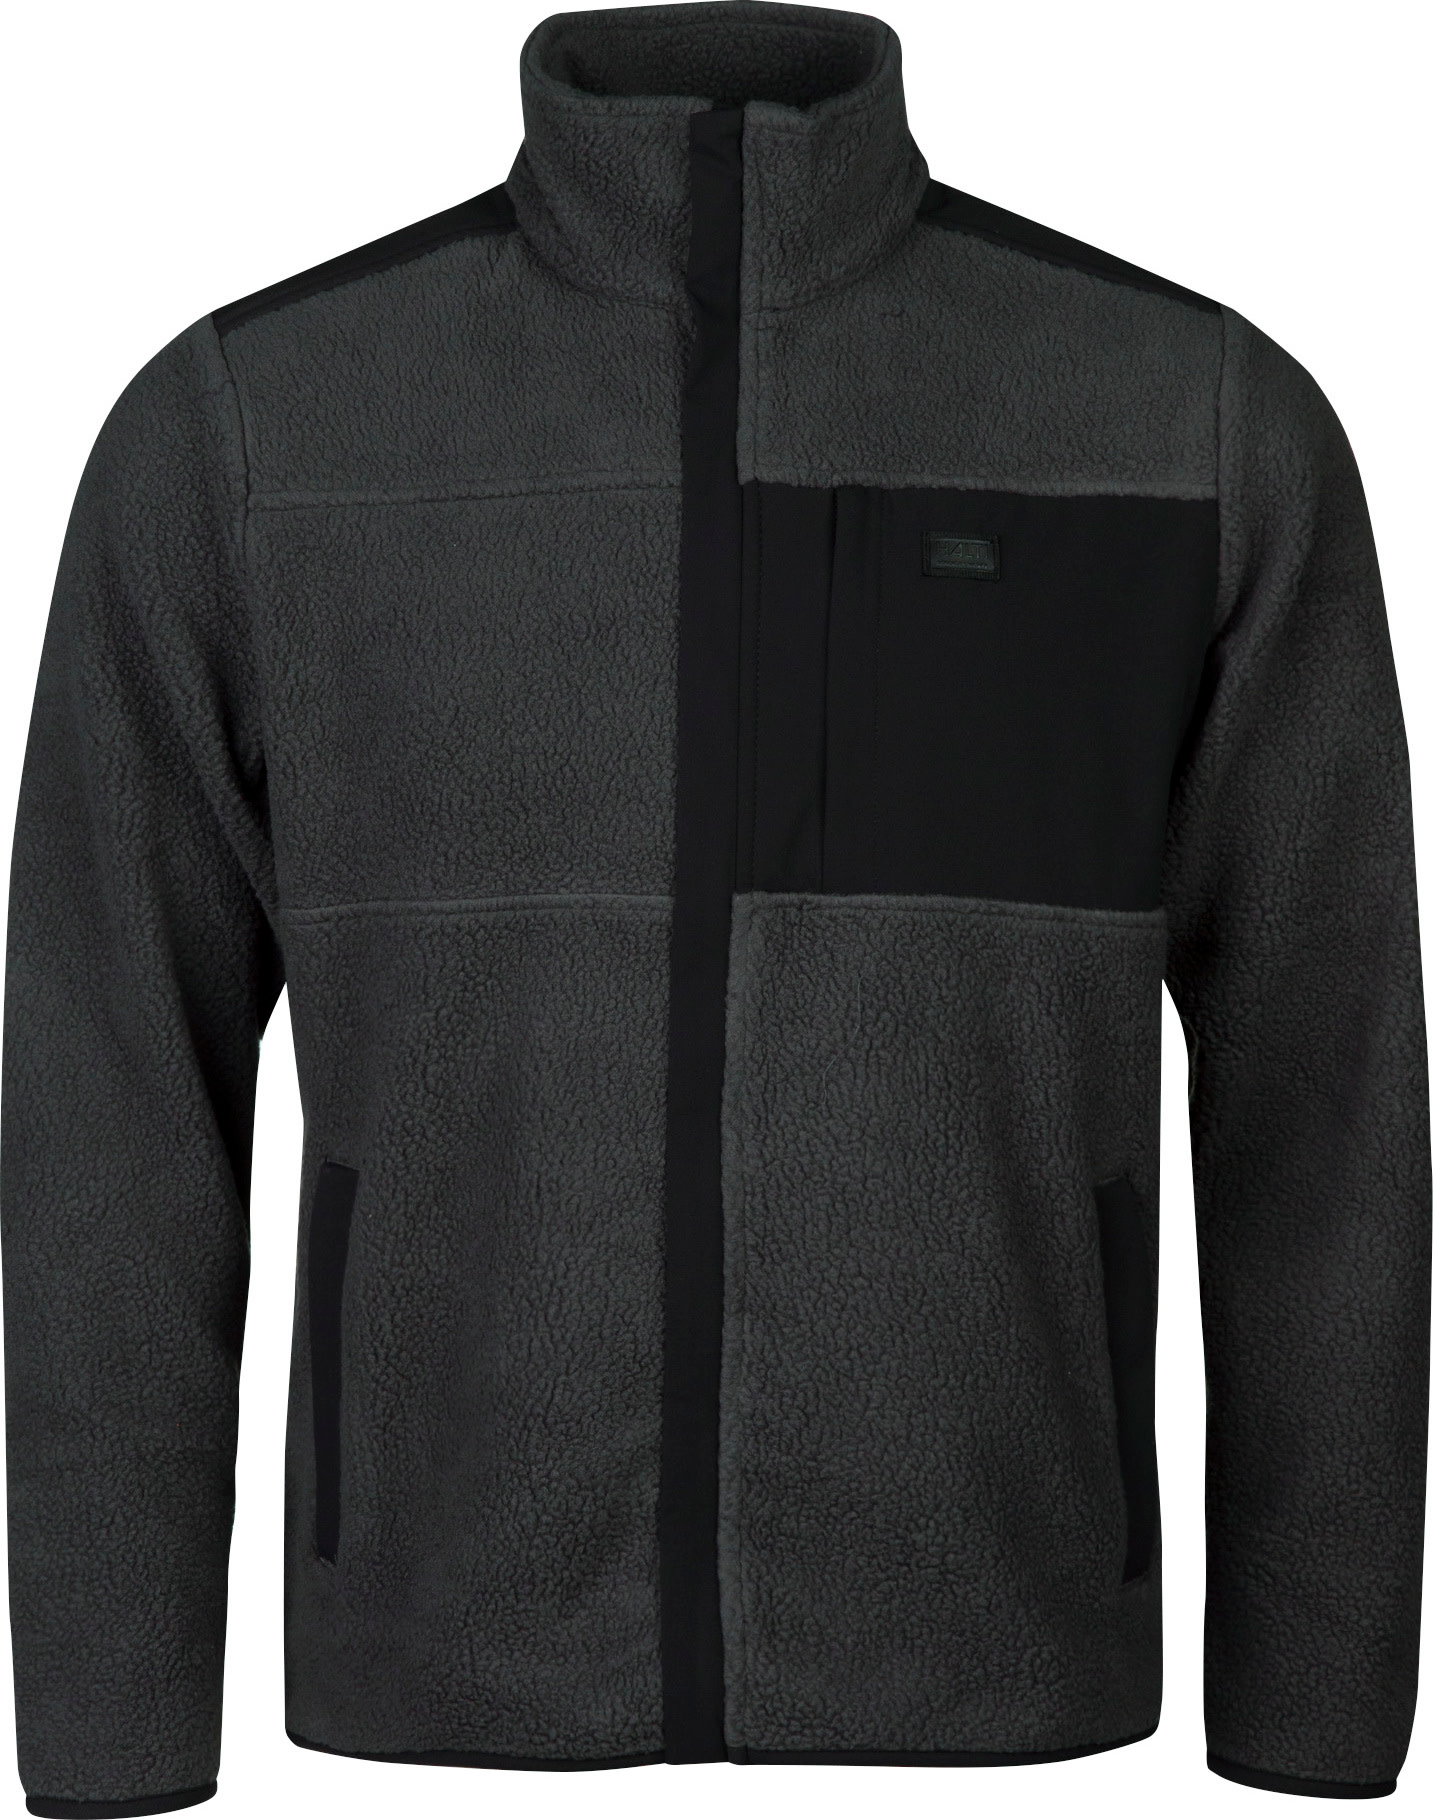 Halti Halti Men's Klaidu Fleece Jacket Black Sand Grey L, Black Sand Grey